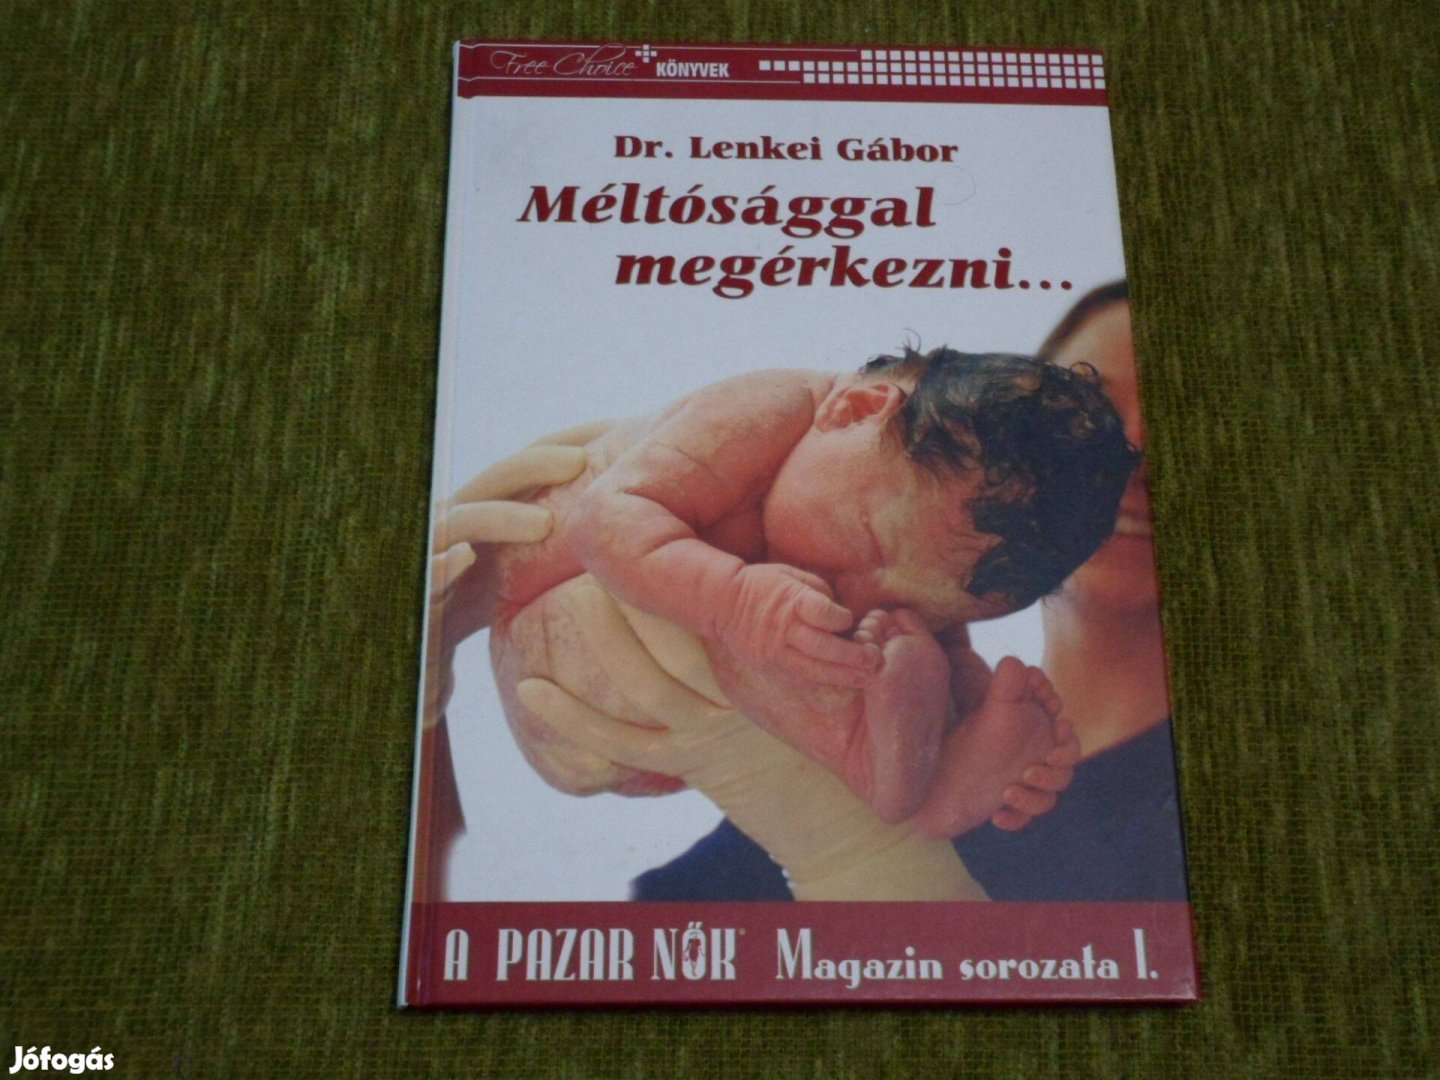 Dr. Lenkei Gábor: Méltósággal megérkezni - Könyv a születésről